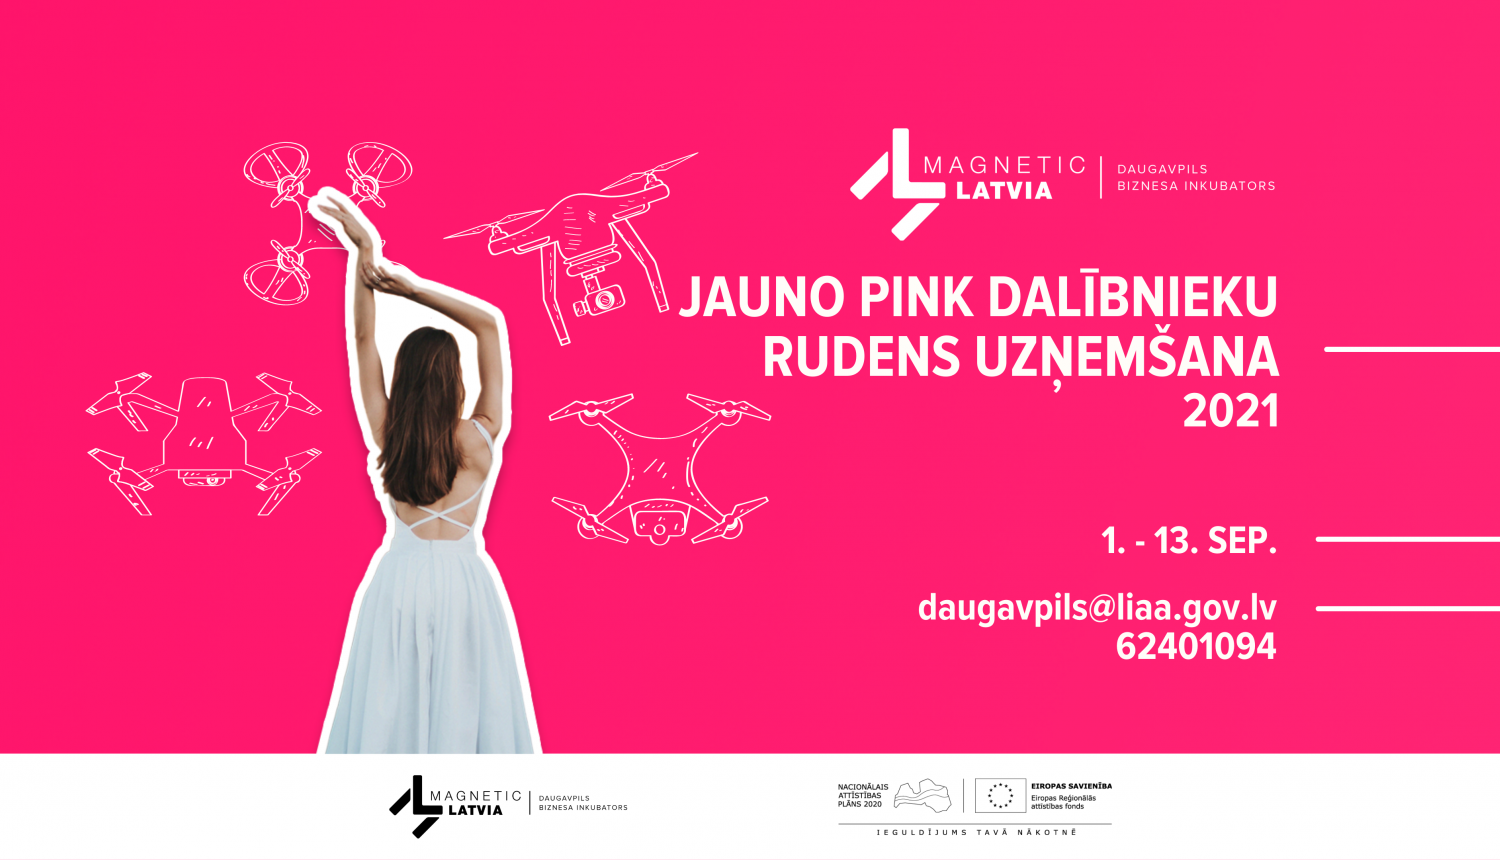 Rozā krāsas afiša ar meiteni un dronu siluetiem par uzņemšanu biznesa inkubatorā